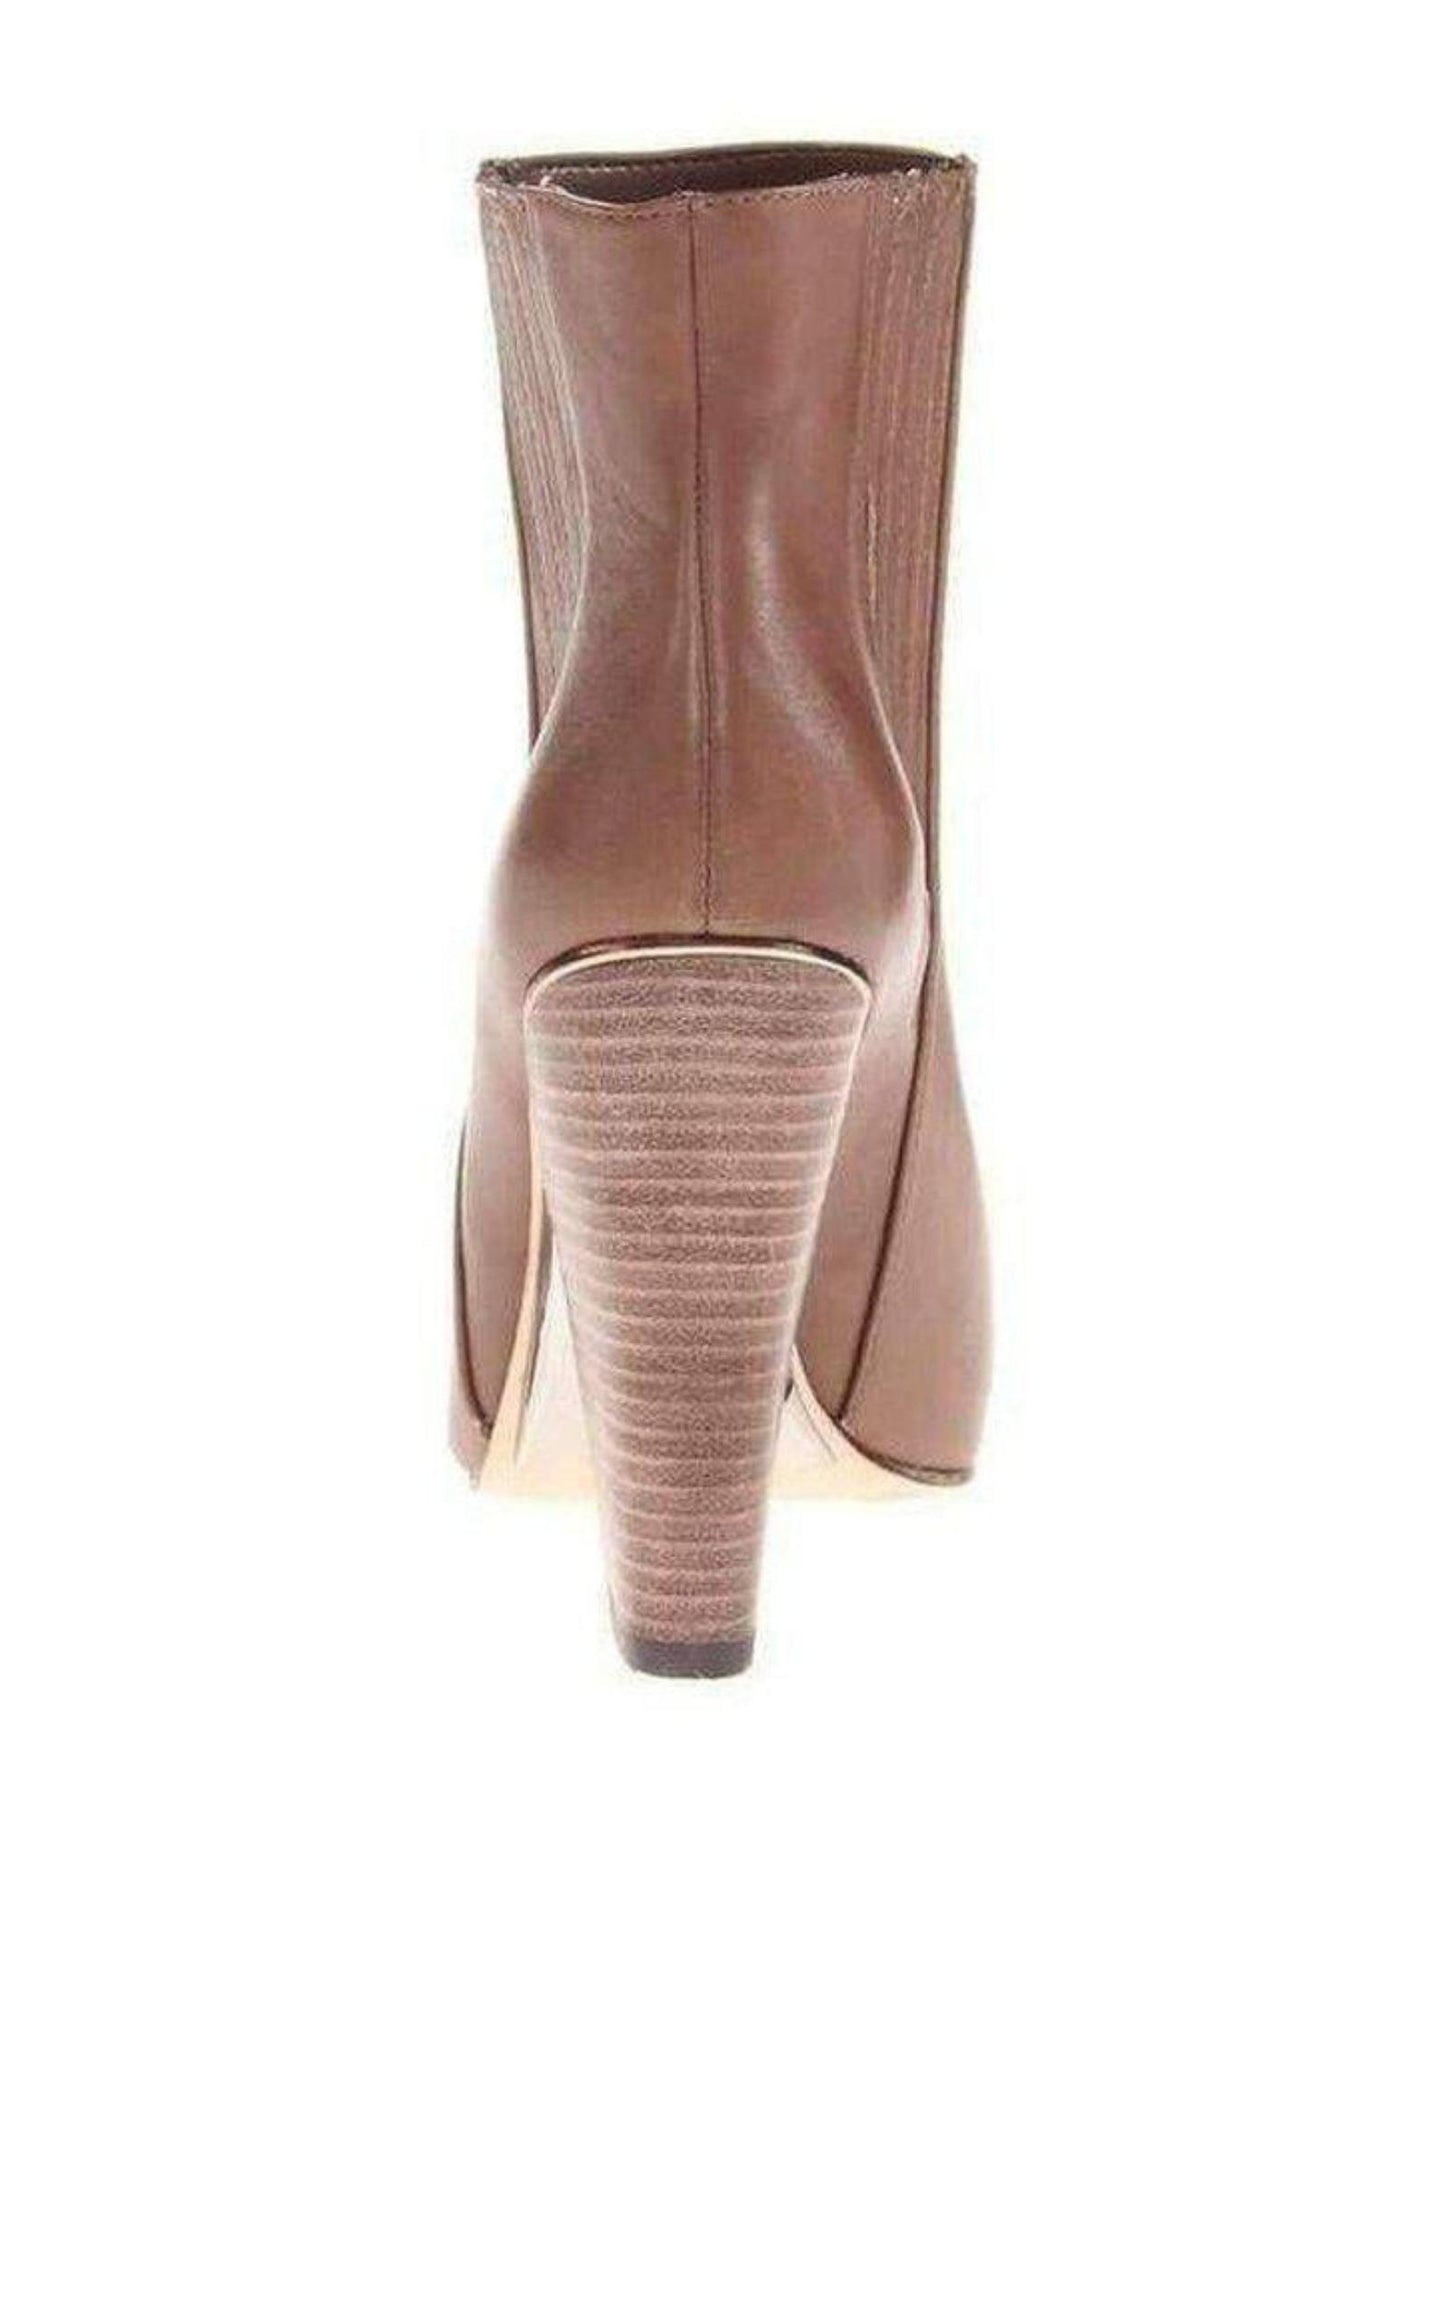  BCBGMAXAZRIAMetild Beige Leather High Heel Bootie - Runway Catalog